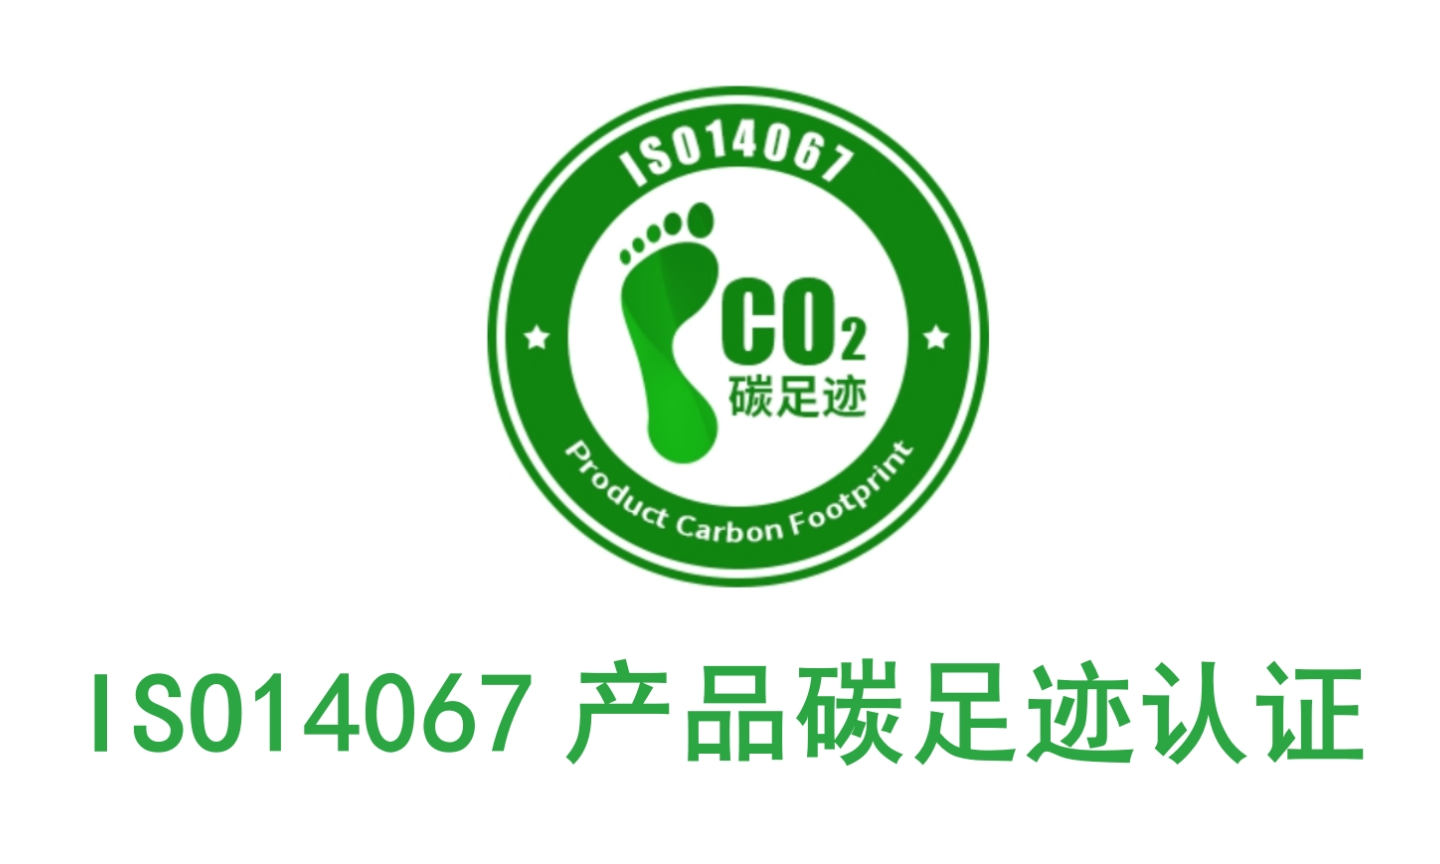 江苏国内碳足迹认证的周期,碳足迹认证